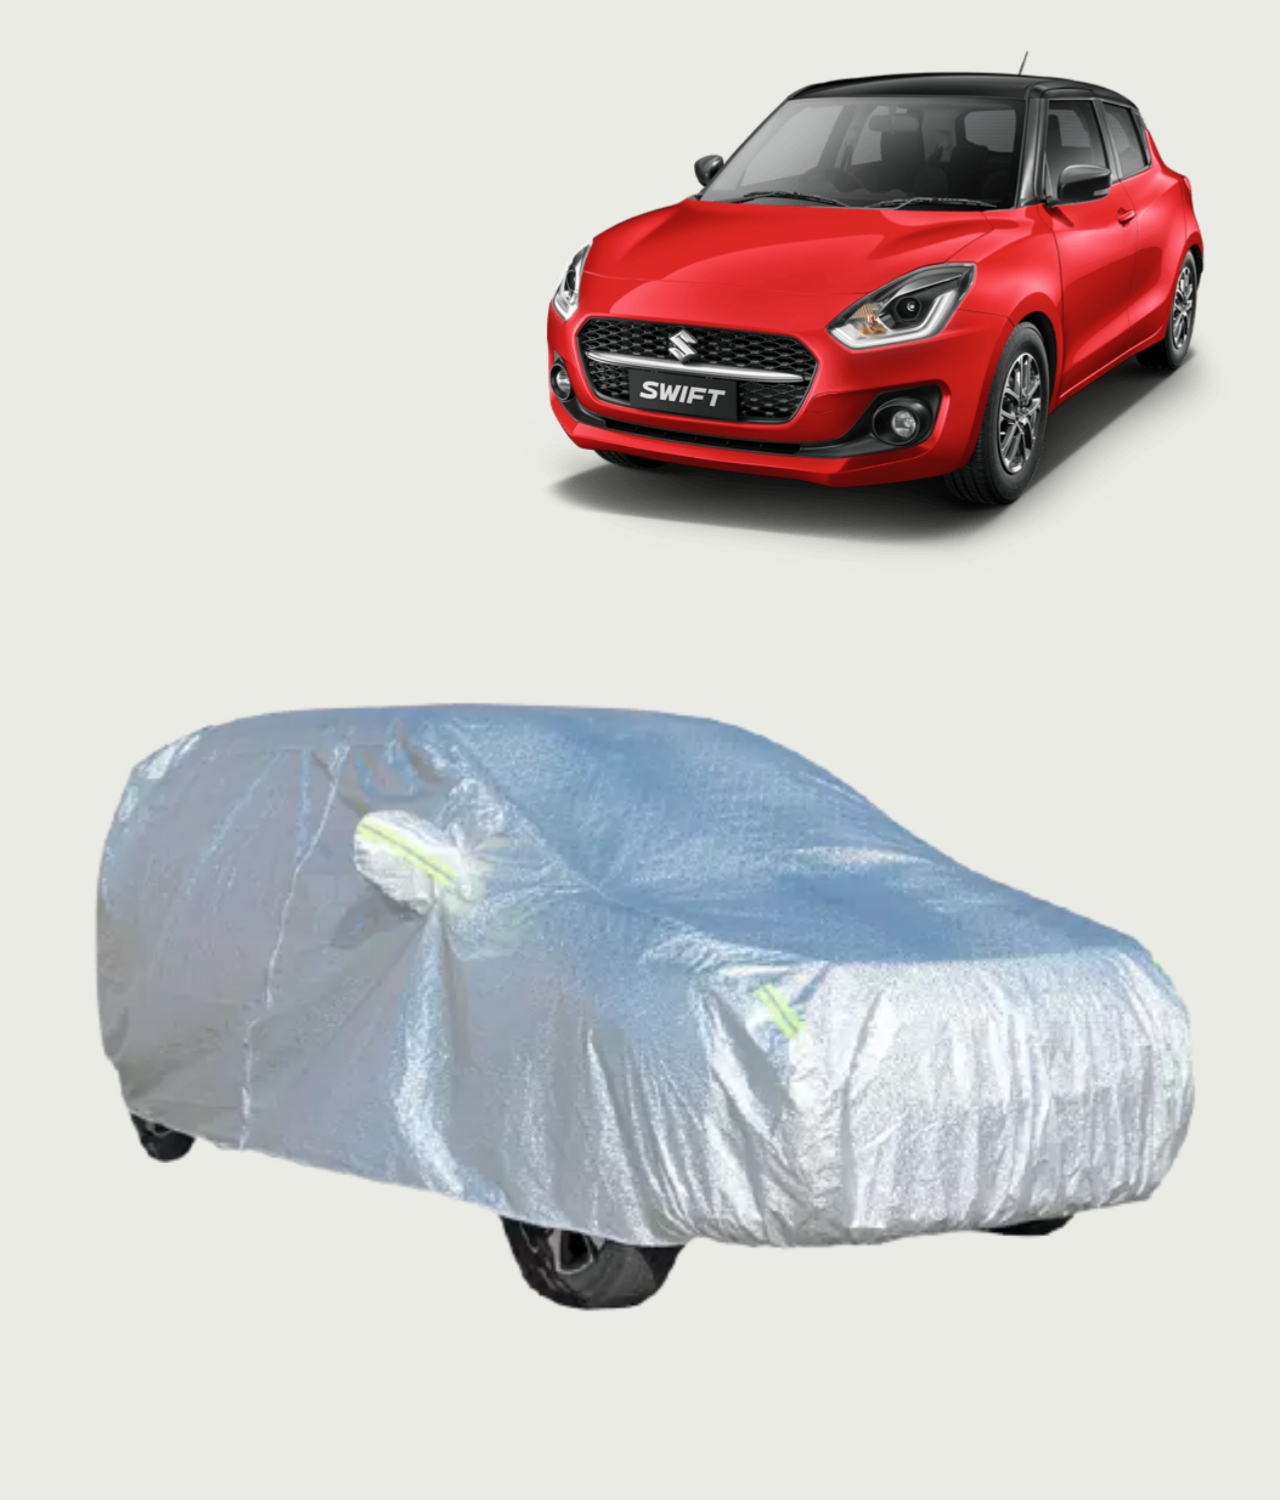 Maruti Suzuki Swift Premium Silver Outdoor Car Cover - Nellai Tarpaulin